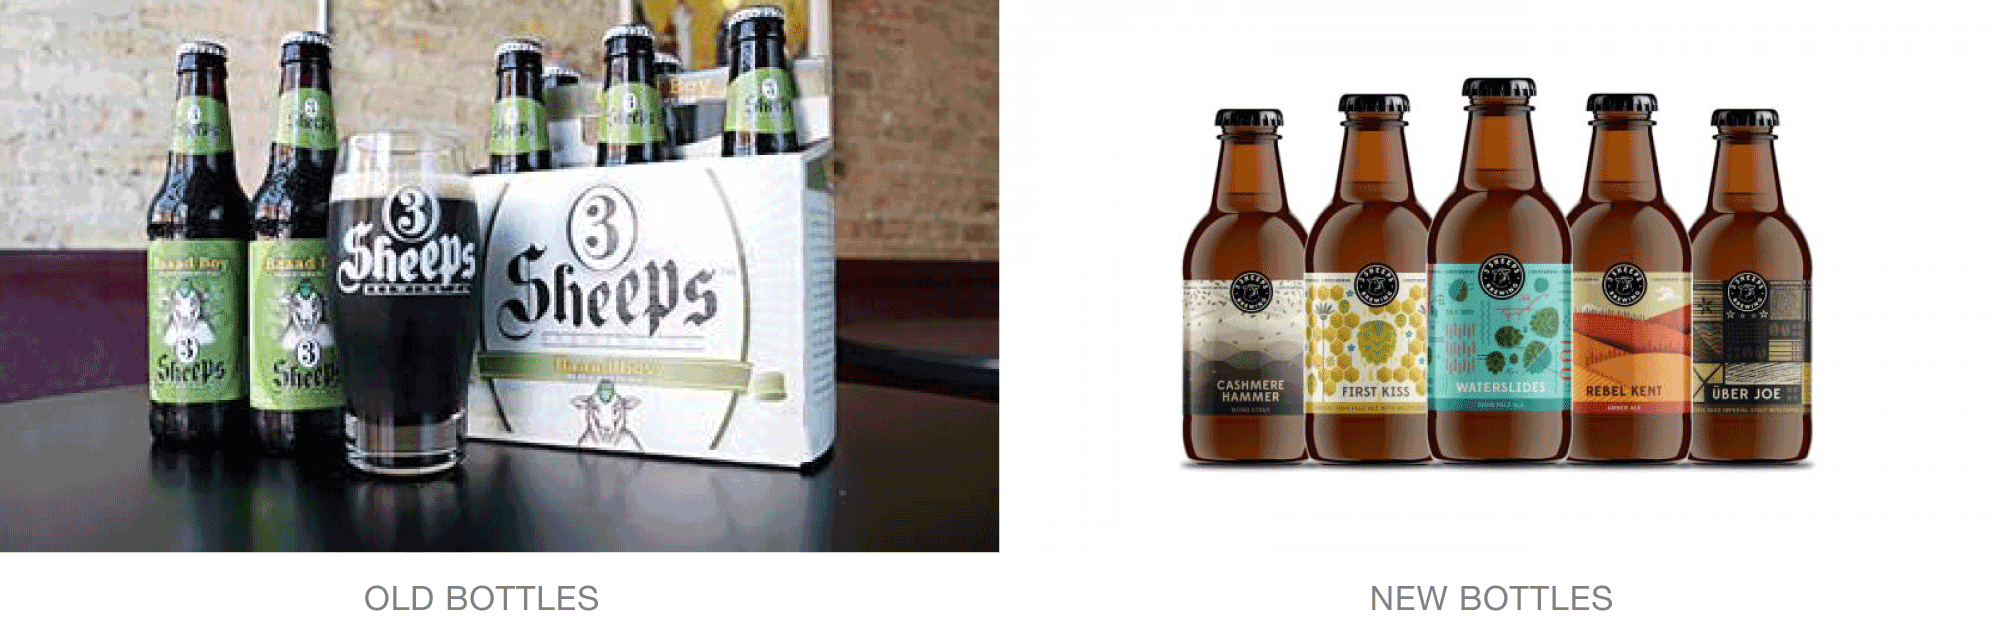 Old vs. New Bottles